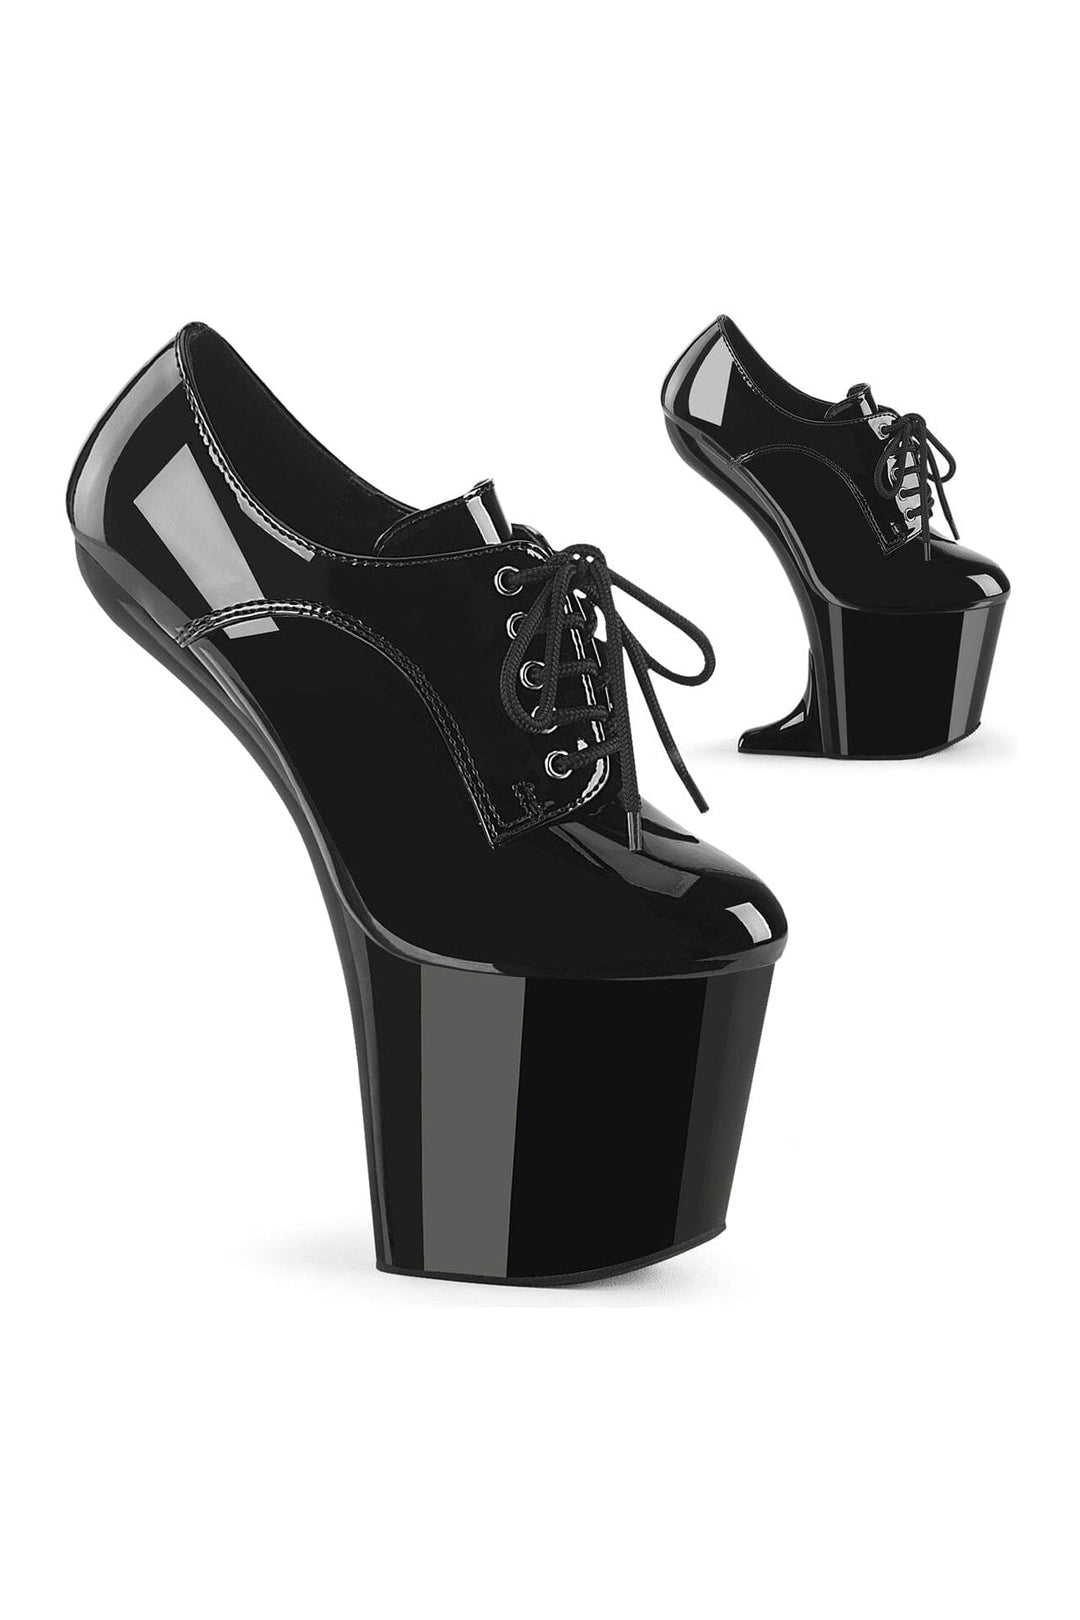 CRAZE-860 Black Patent Pump-Pumps- Stripper Shoes at SEXYSHOES.COM